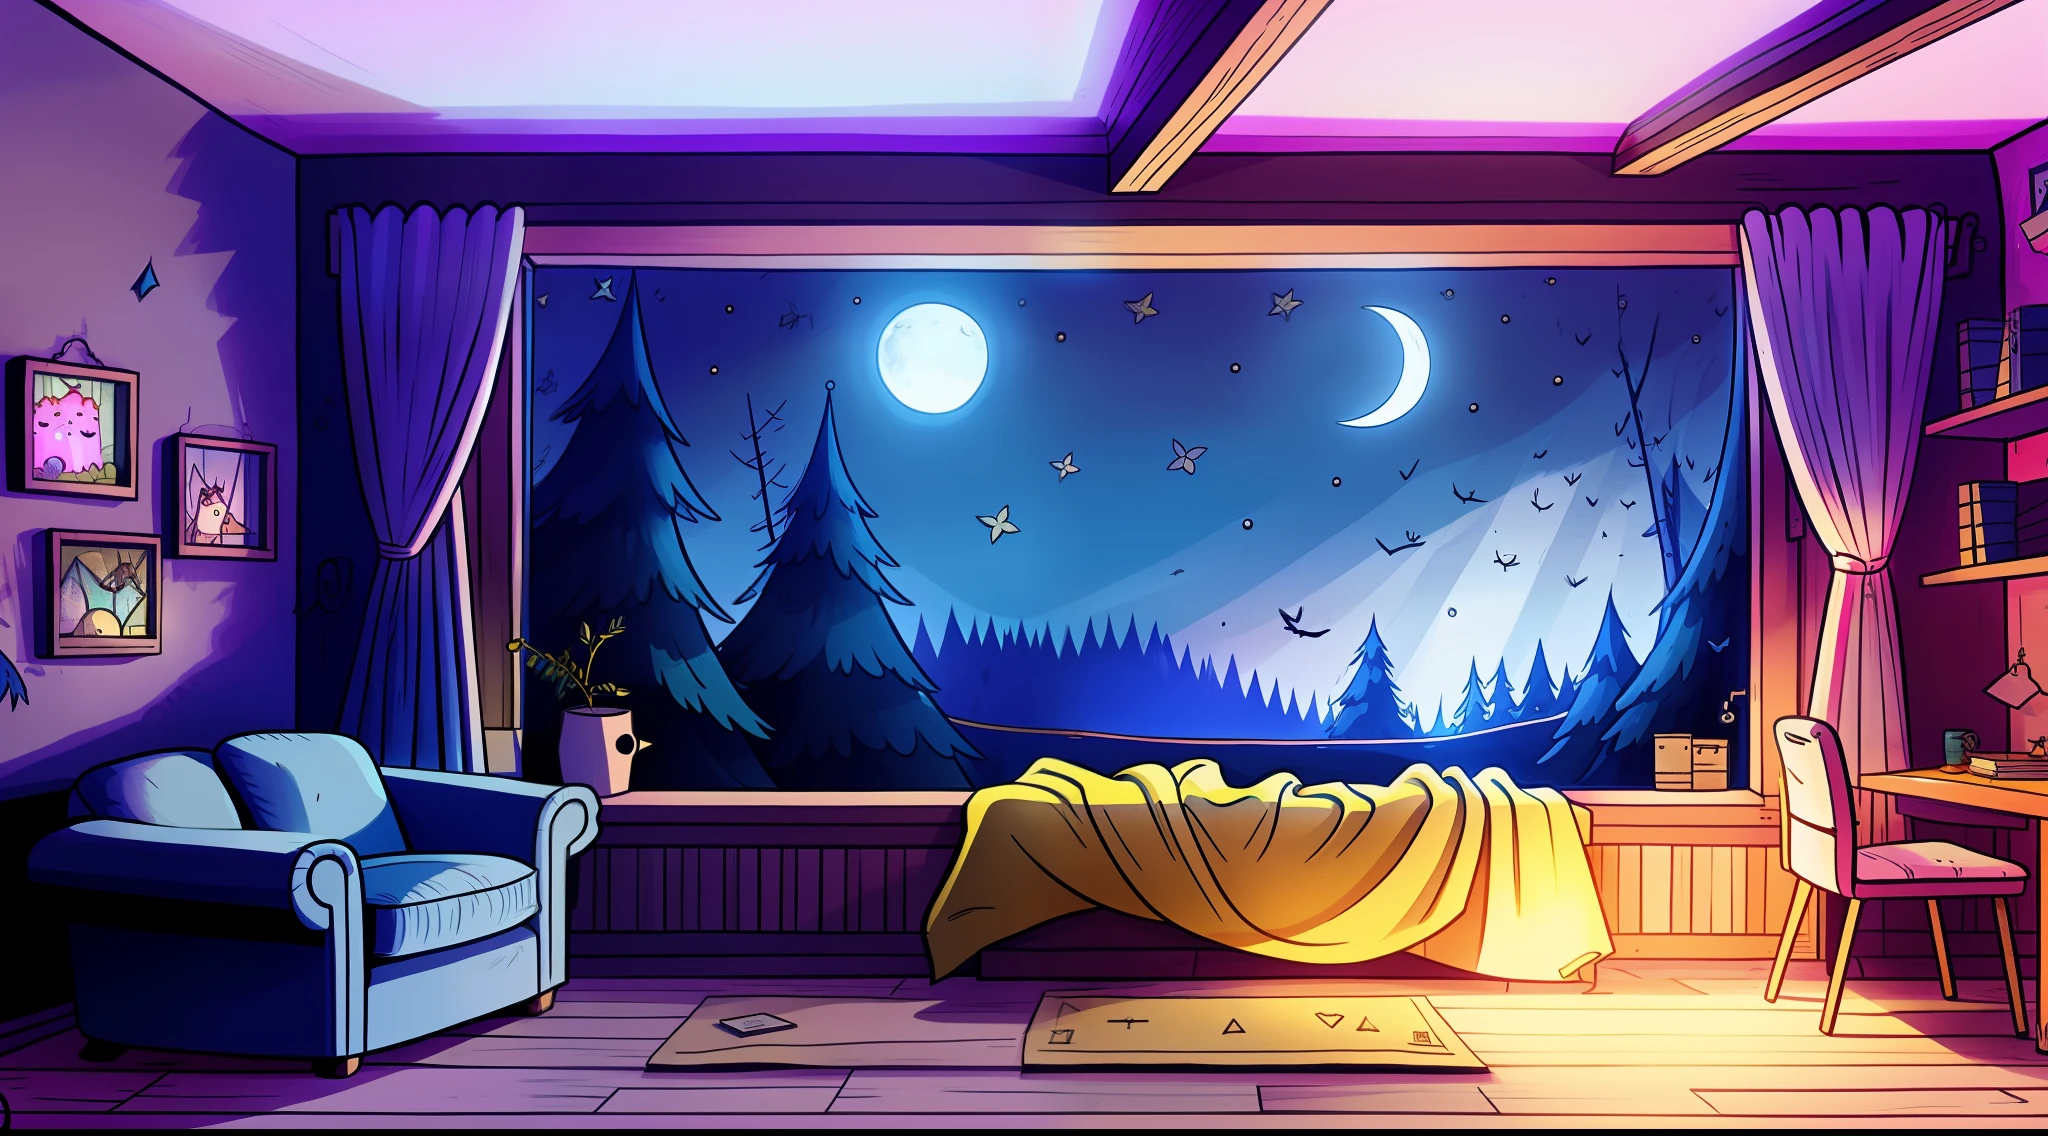 ein gemütliches Zimmer in der Nacht, Mondlicht scheint durch das Fenster, detaillierte Abbildung, Karikatur, no estilo de gravityfalls,Erwachsene kurz